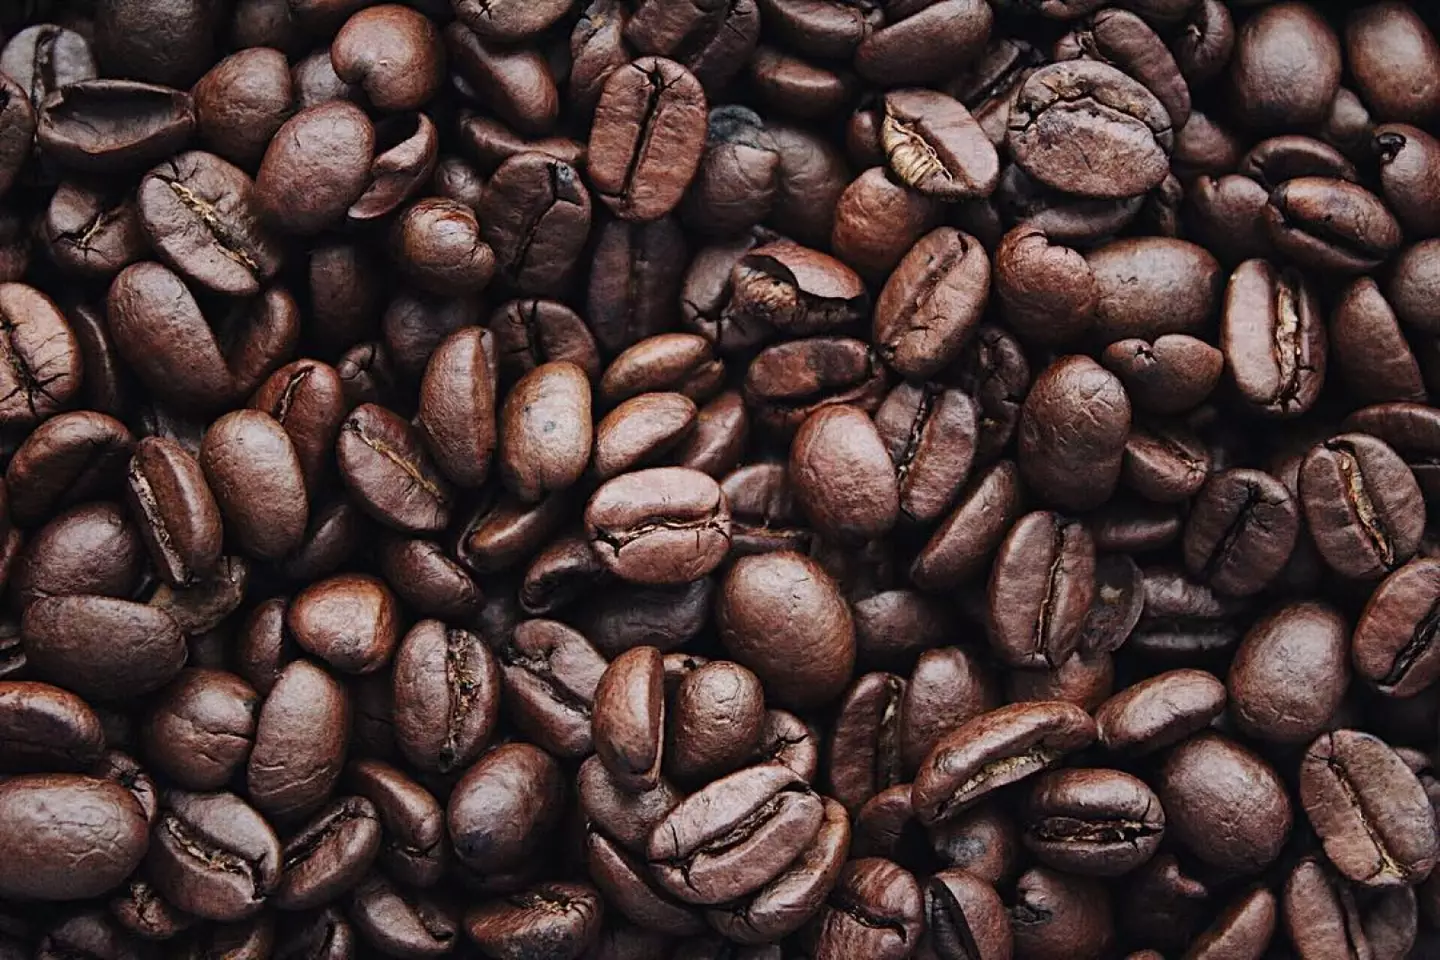 Pret holds the most caffeine for single espressos.